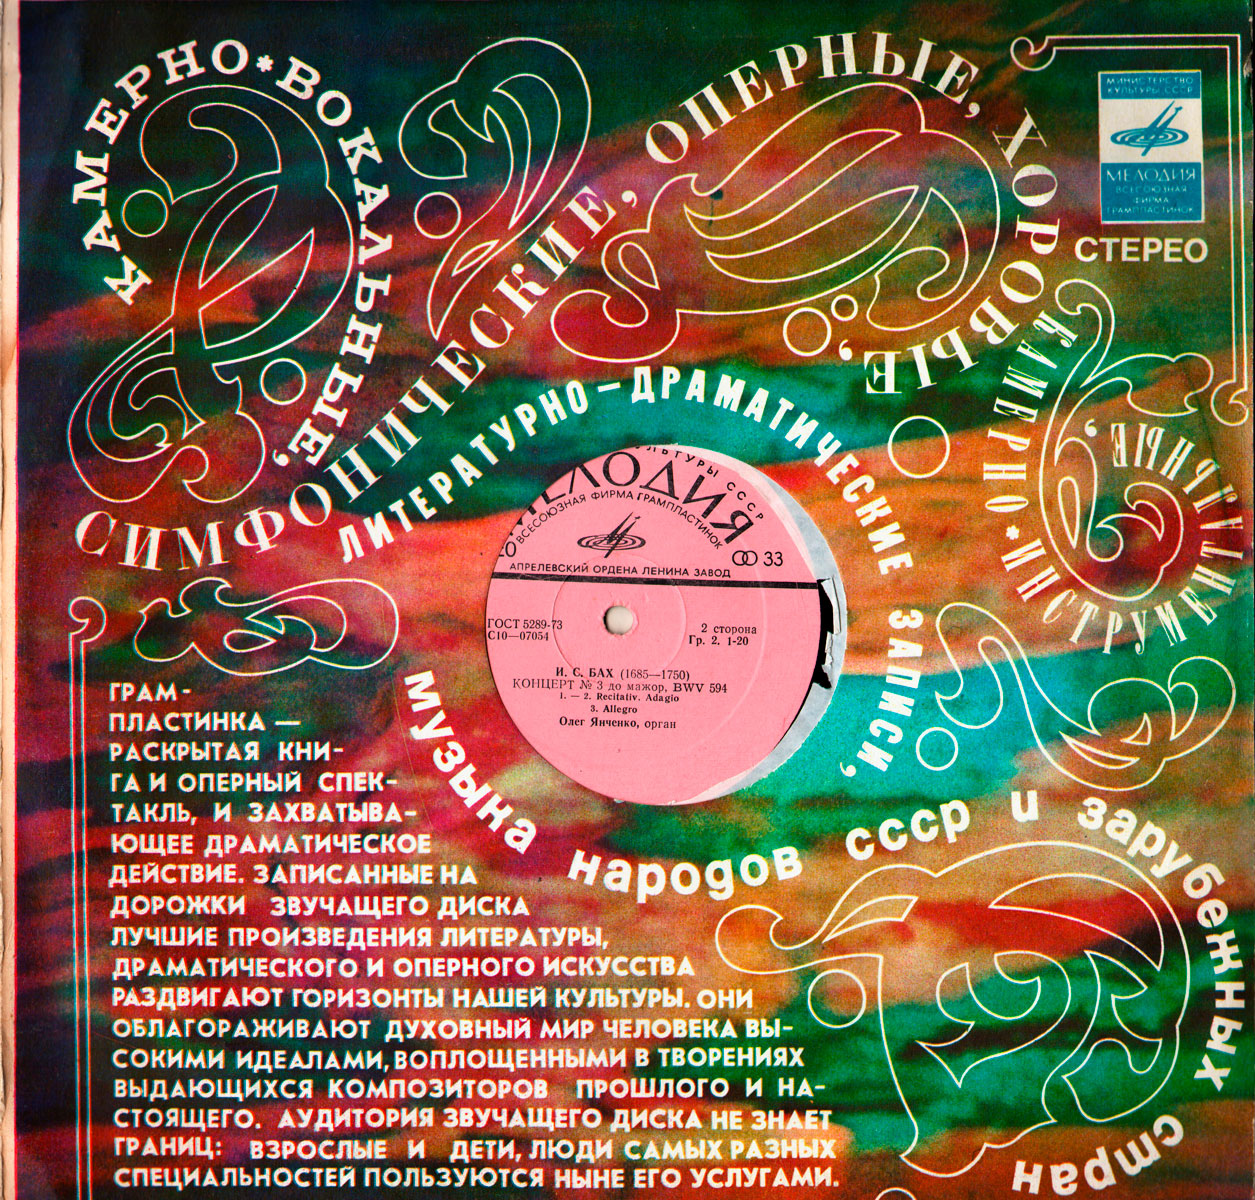 И. С. Бах: Концерты для органа (Олег Янченко)